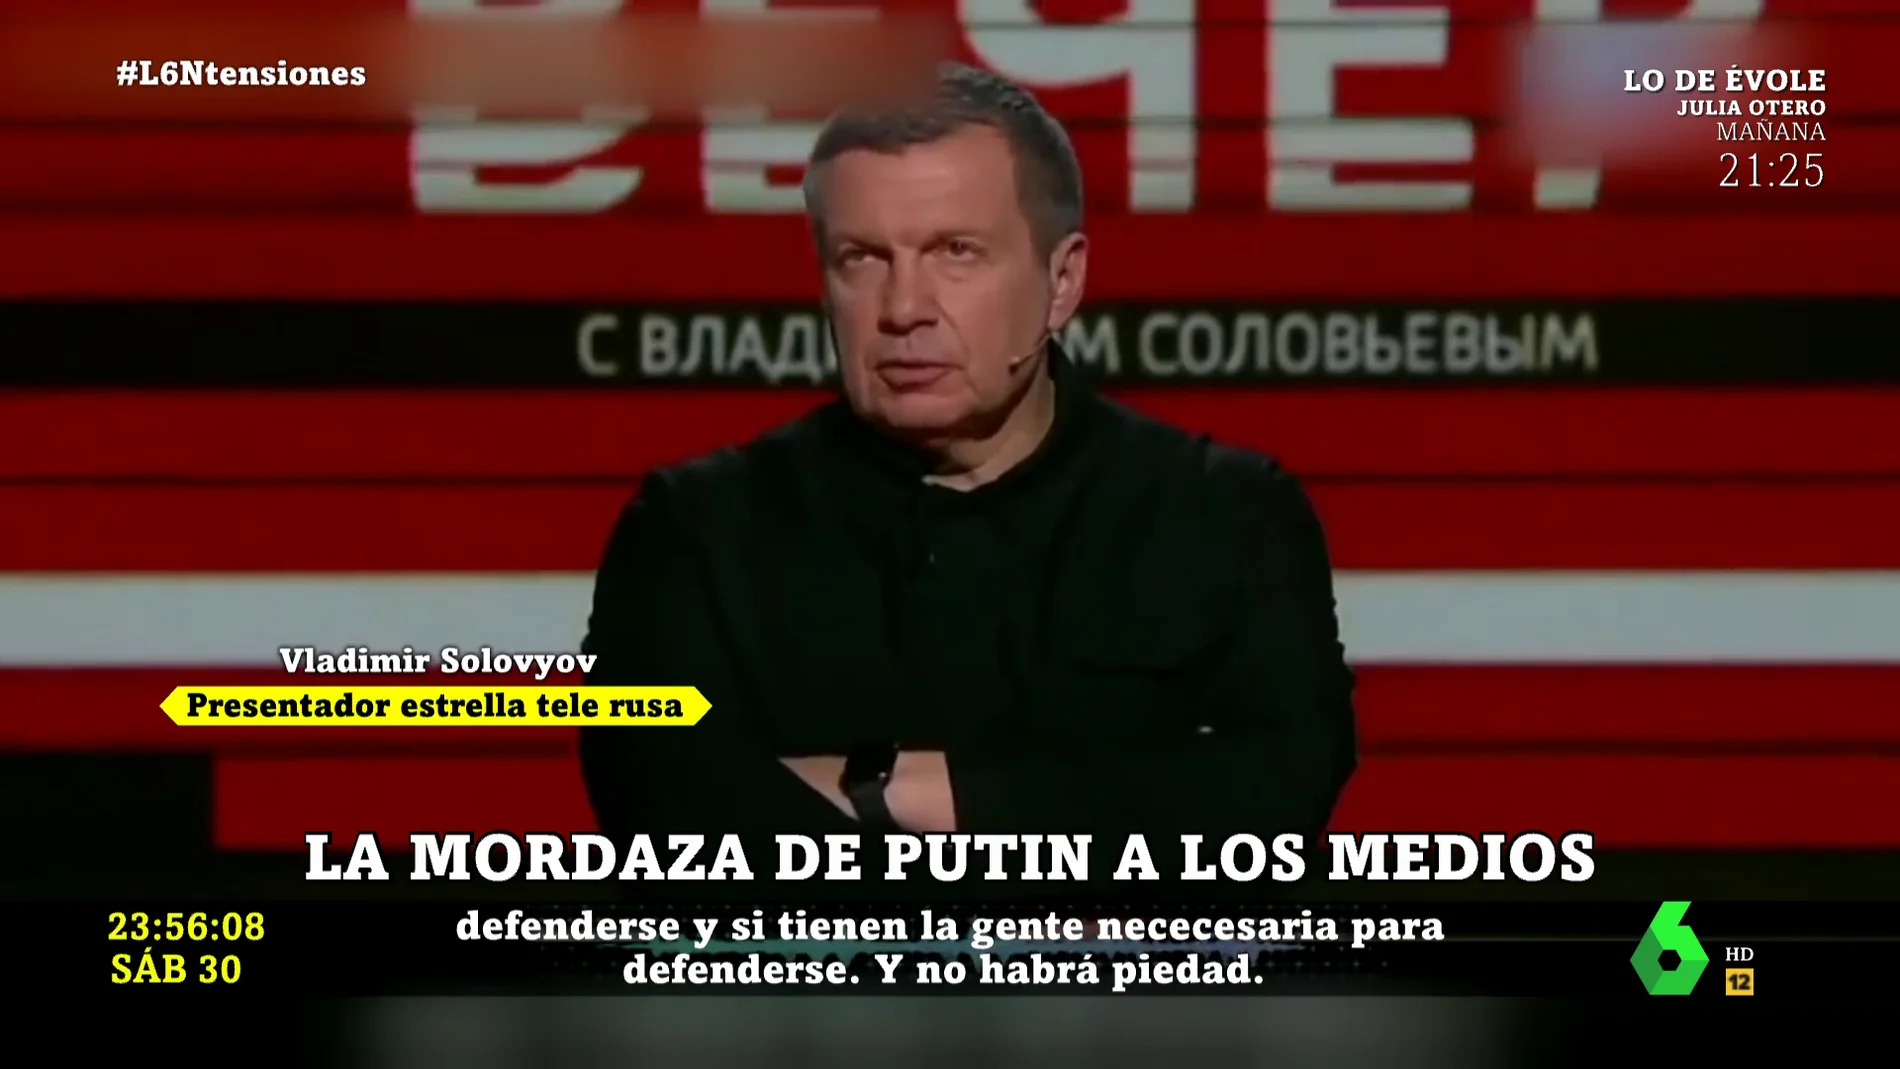 Los impactantes mensajes de propaganda del Kremlin de la tele rusa: "No tendremos piedad. No solo Ucrania tiene que ser desnazificada"